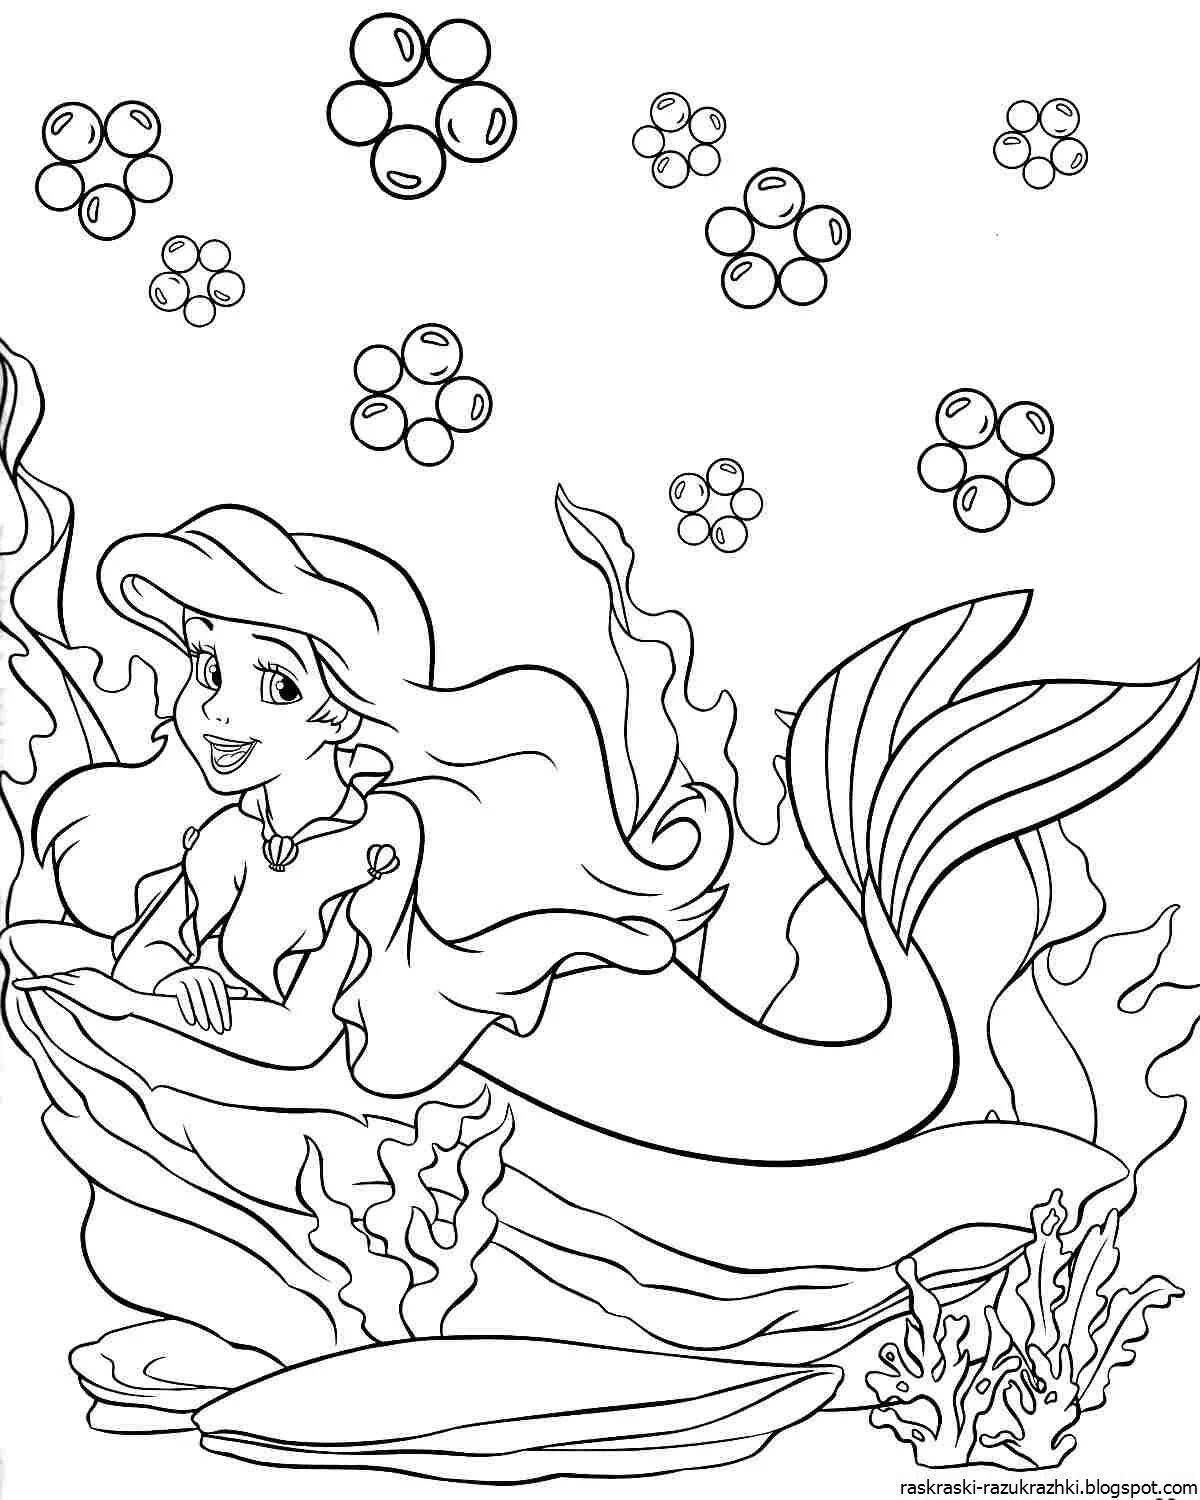 Mermaid ariel coloring book for girls